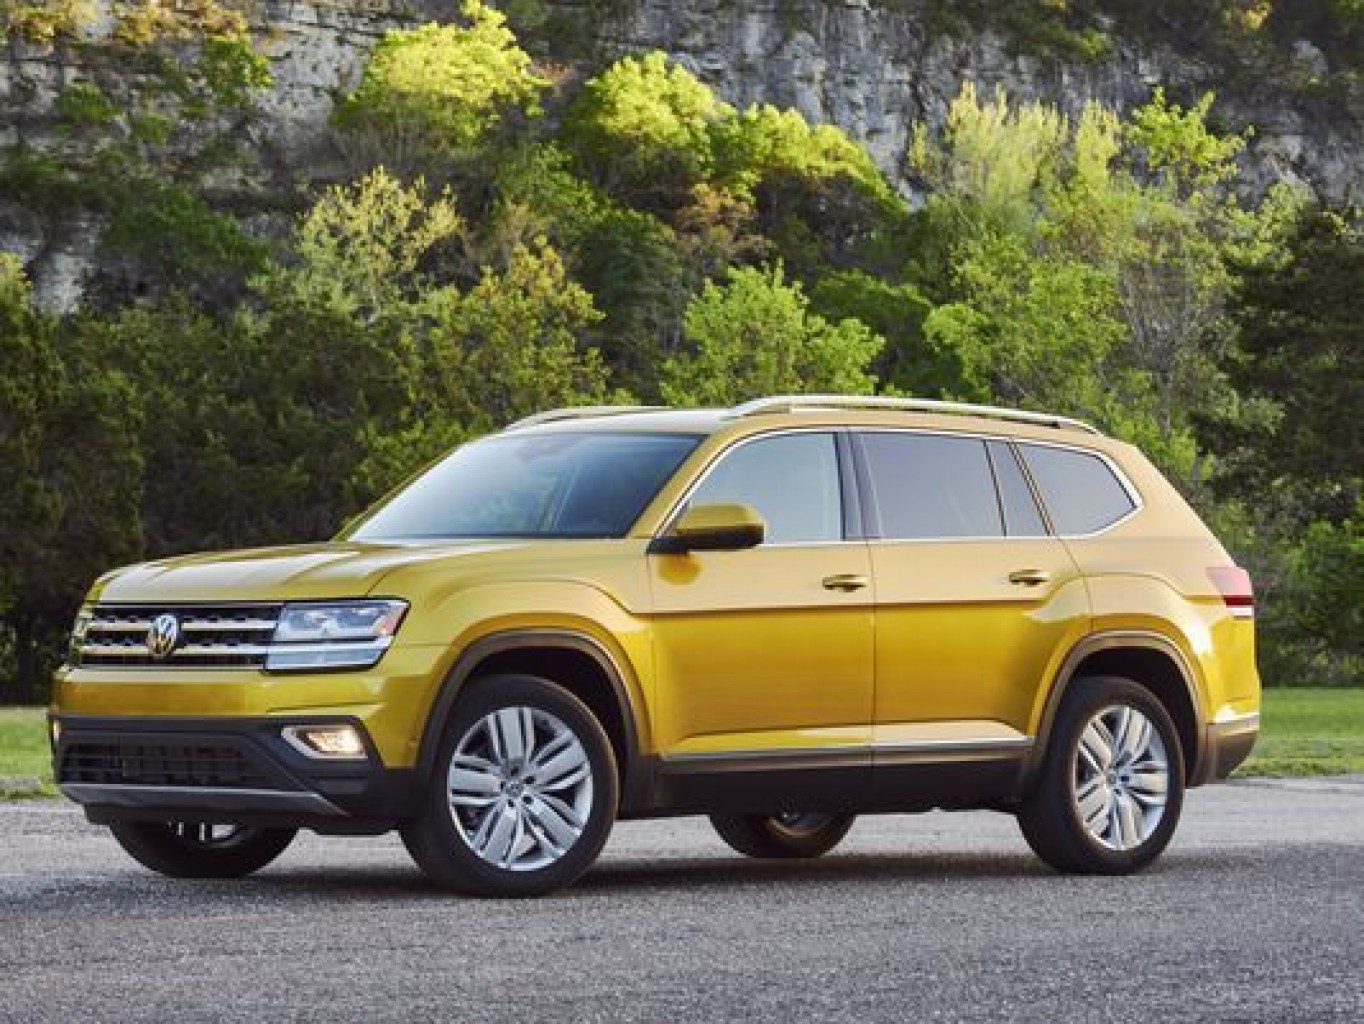 Volkswagen llama a revisión a más de 73,000 vehículos en los Estados Unidos